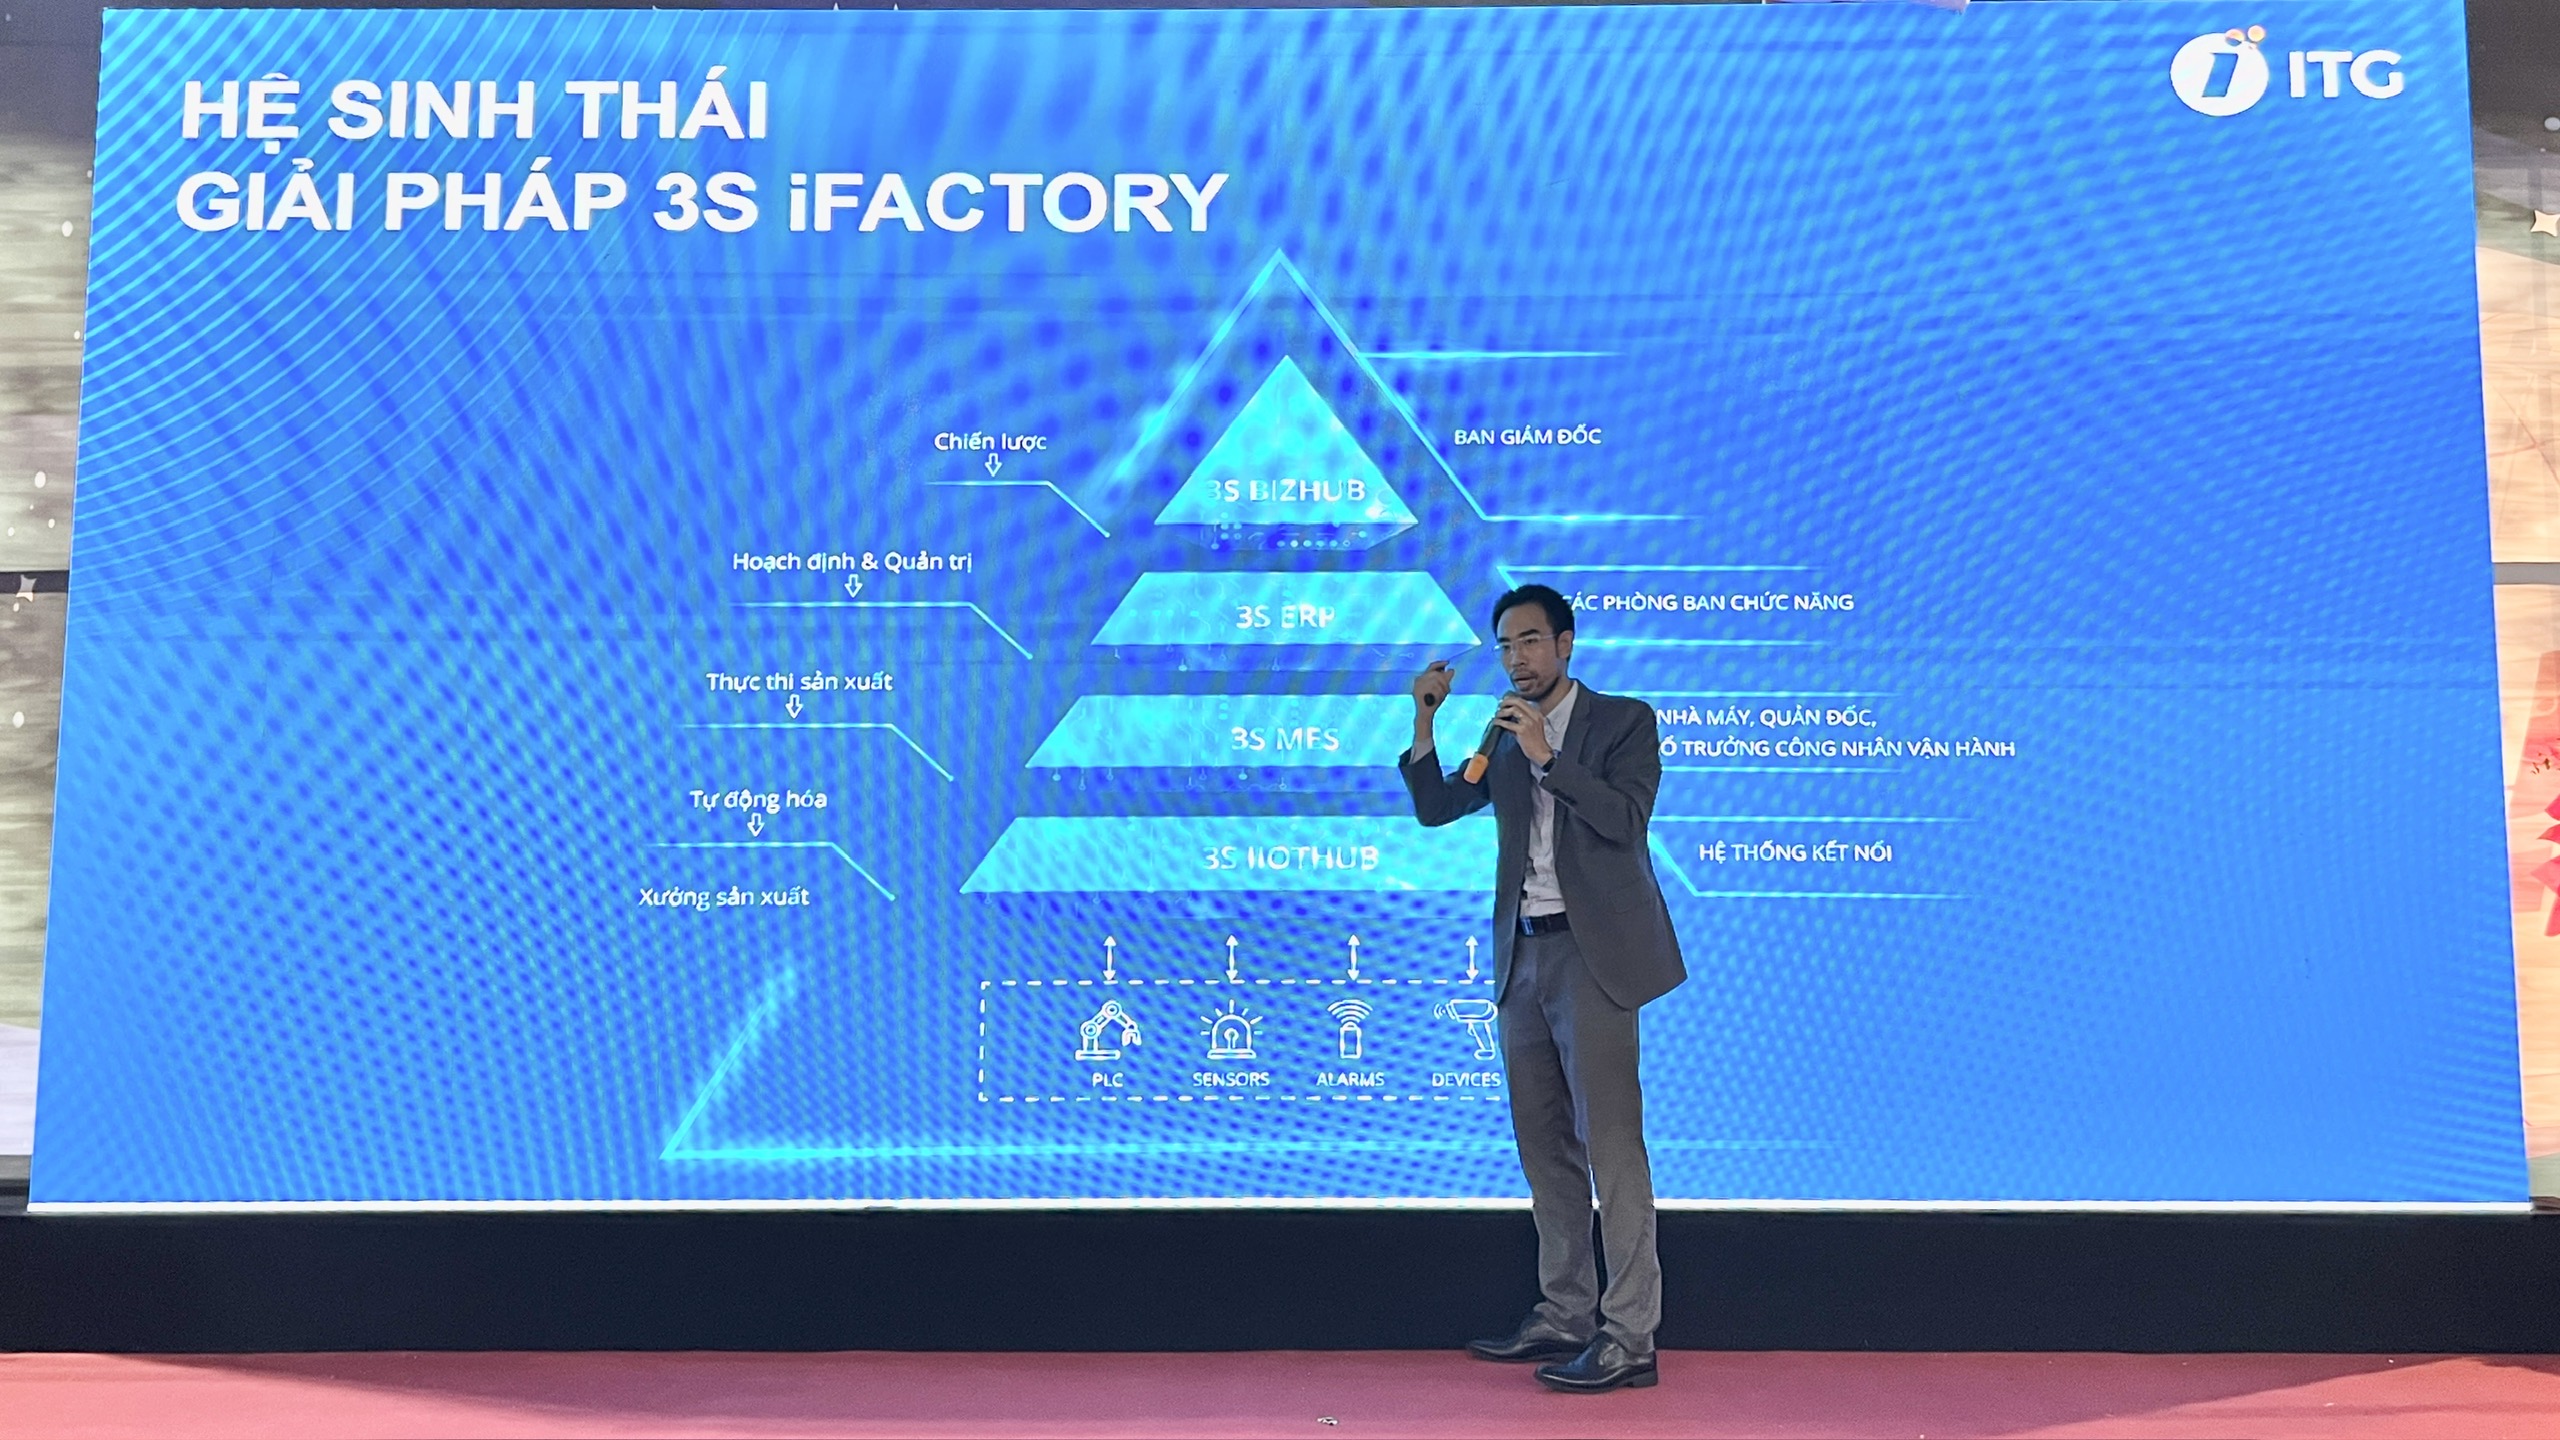 ht2 - Giải pháp nhà máy thông minh 3S iFACTORY nhận được sự chú ý tại triển lãm quốc tế VIMF Bắc Ninh 2023